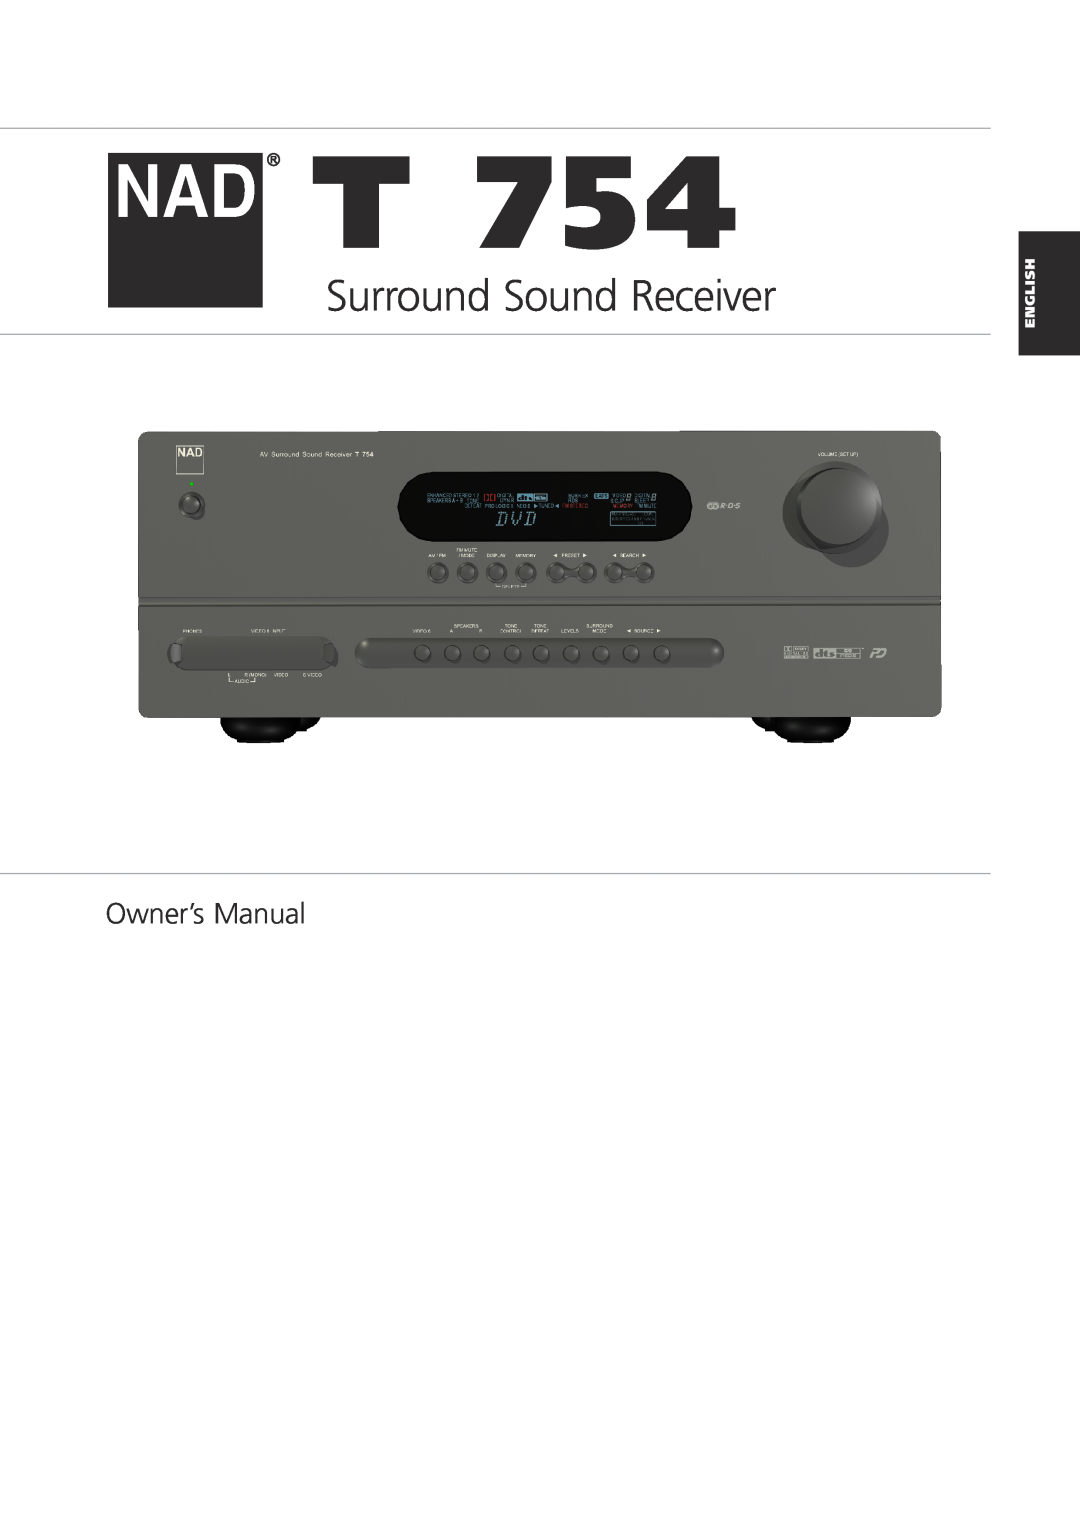 NAD T 754 owner manual English, Surround Sound Receiver, Bedienungsanleitung Gebruikershandleiding 